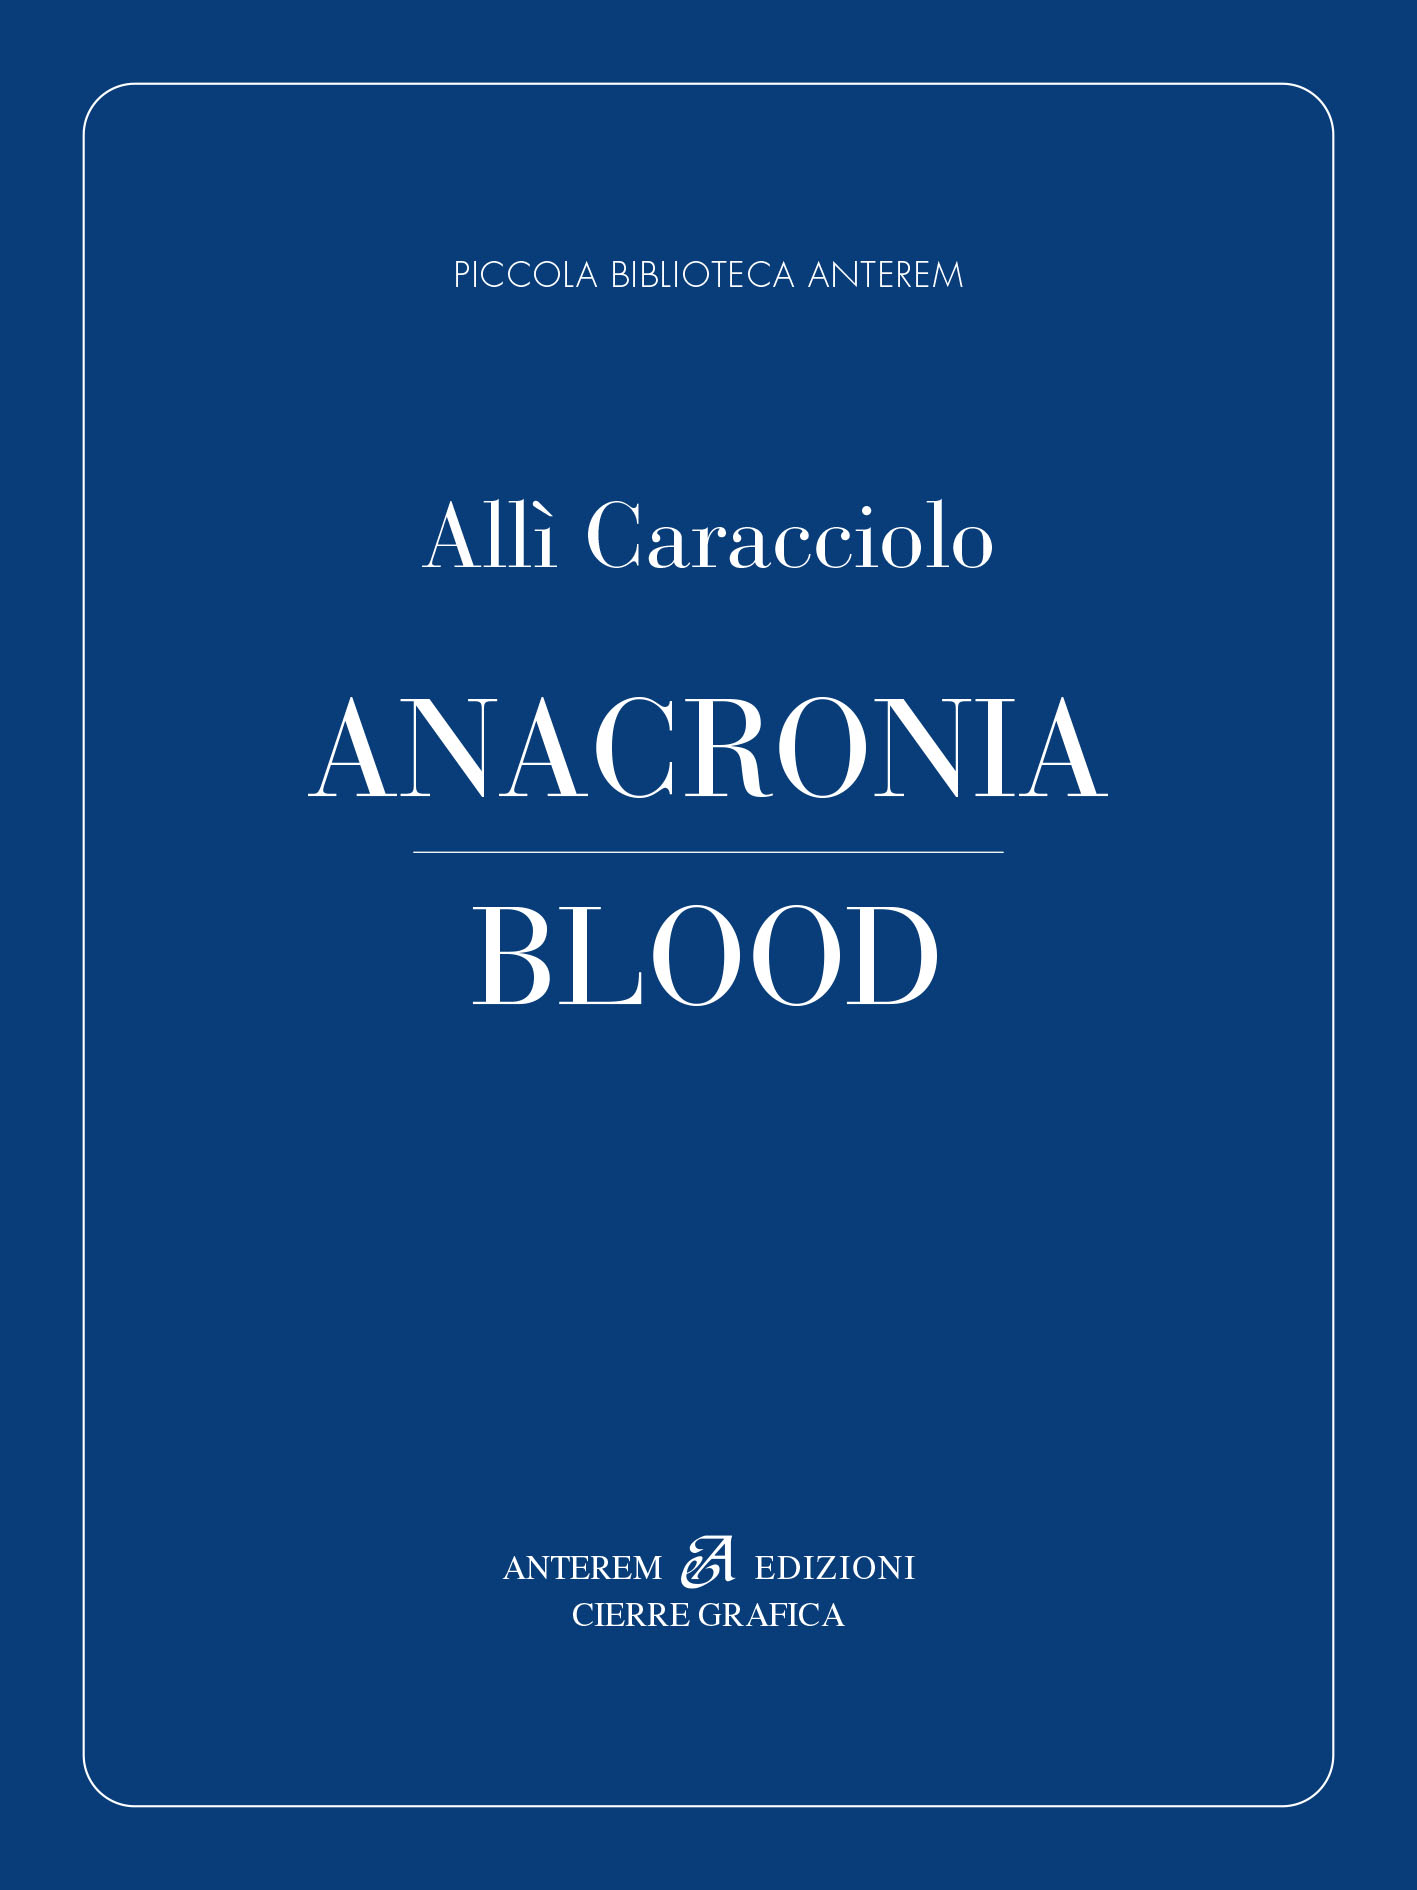 Copertina del libro di Allì Caracciolo: Anacronia